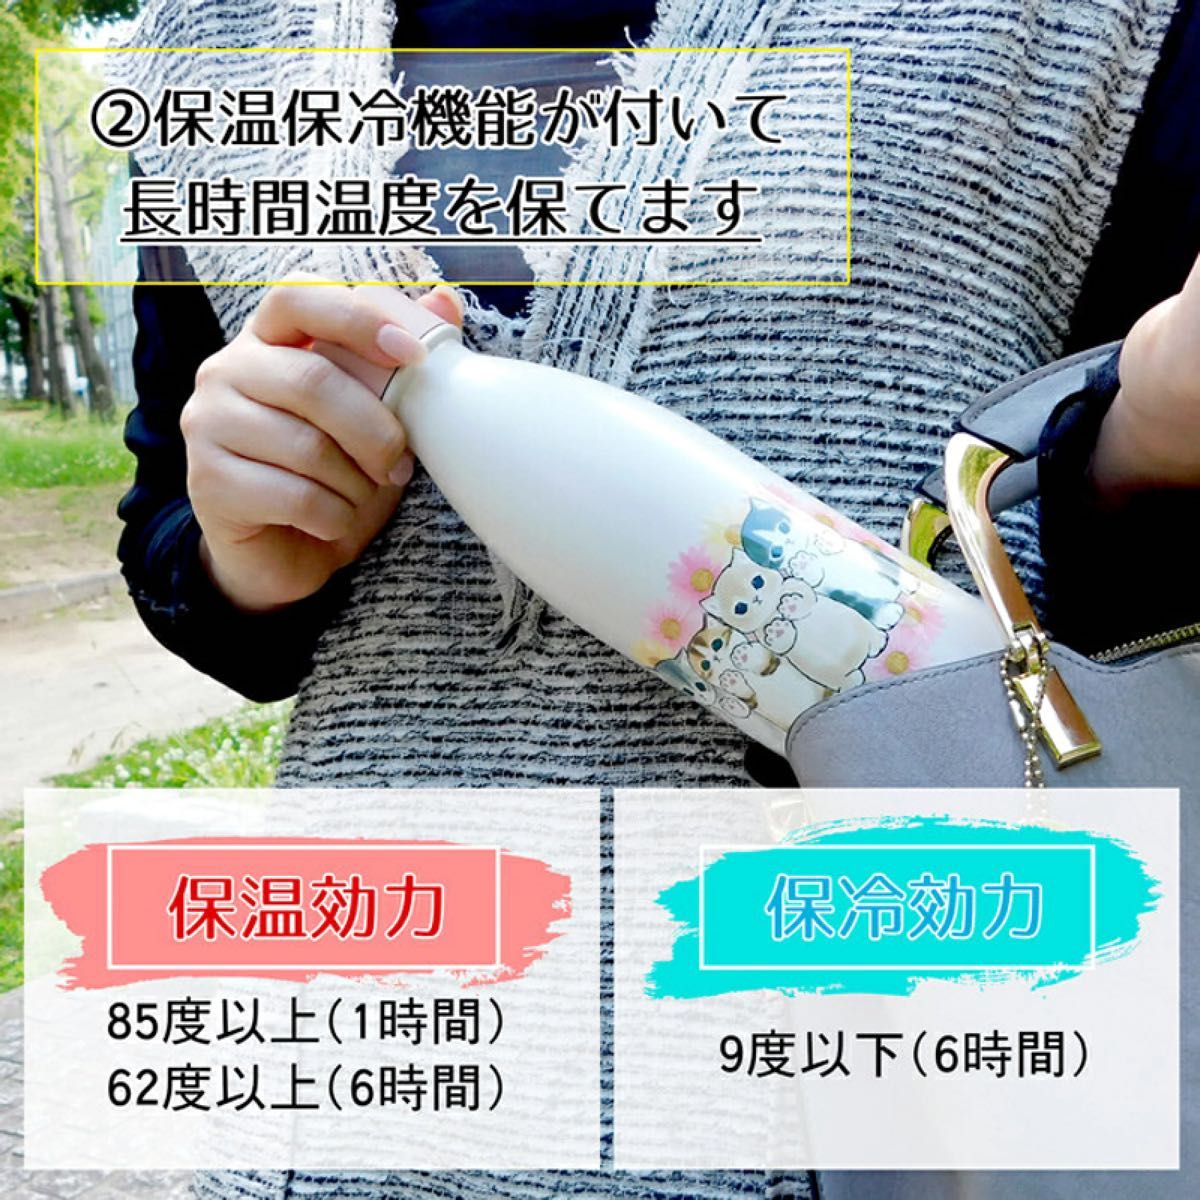 【mofusand】炭酸飲料対応 ステンレスボトル530ml【ピザ】